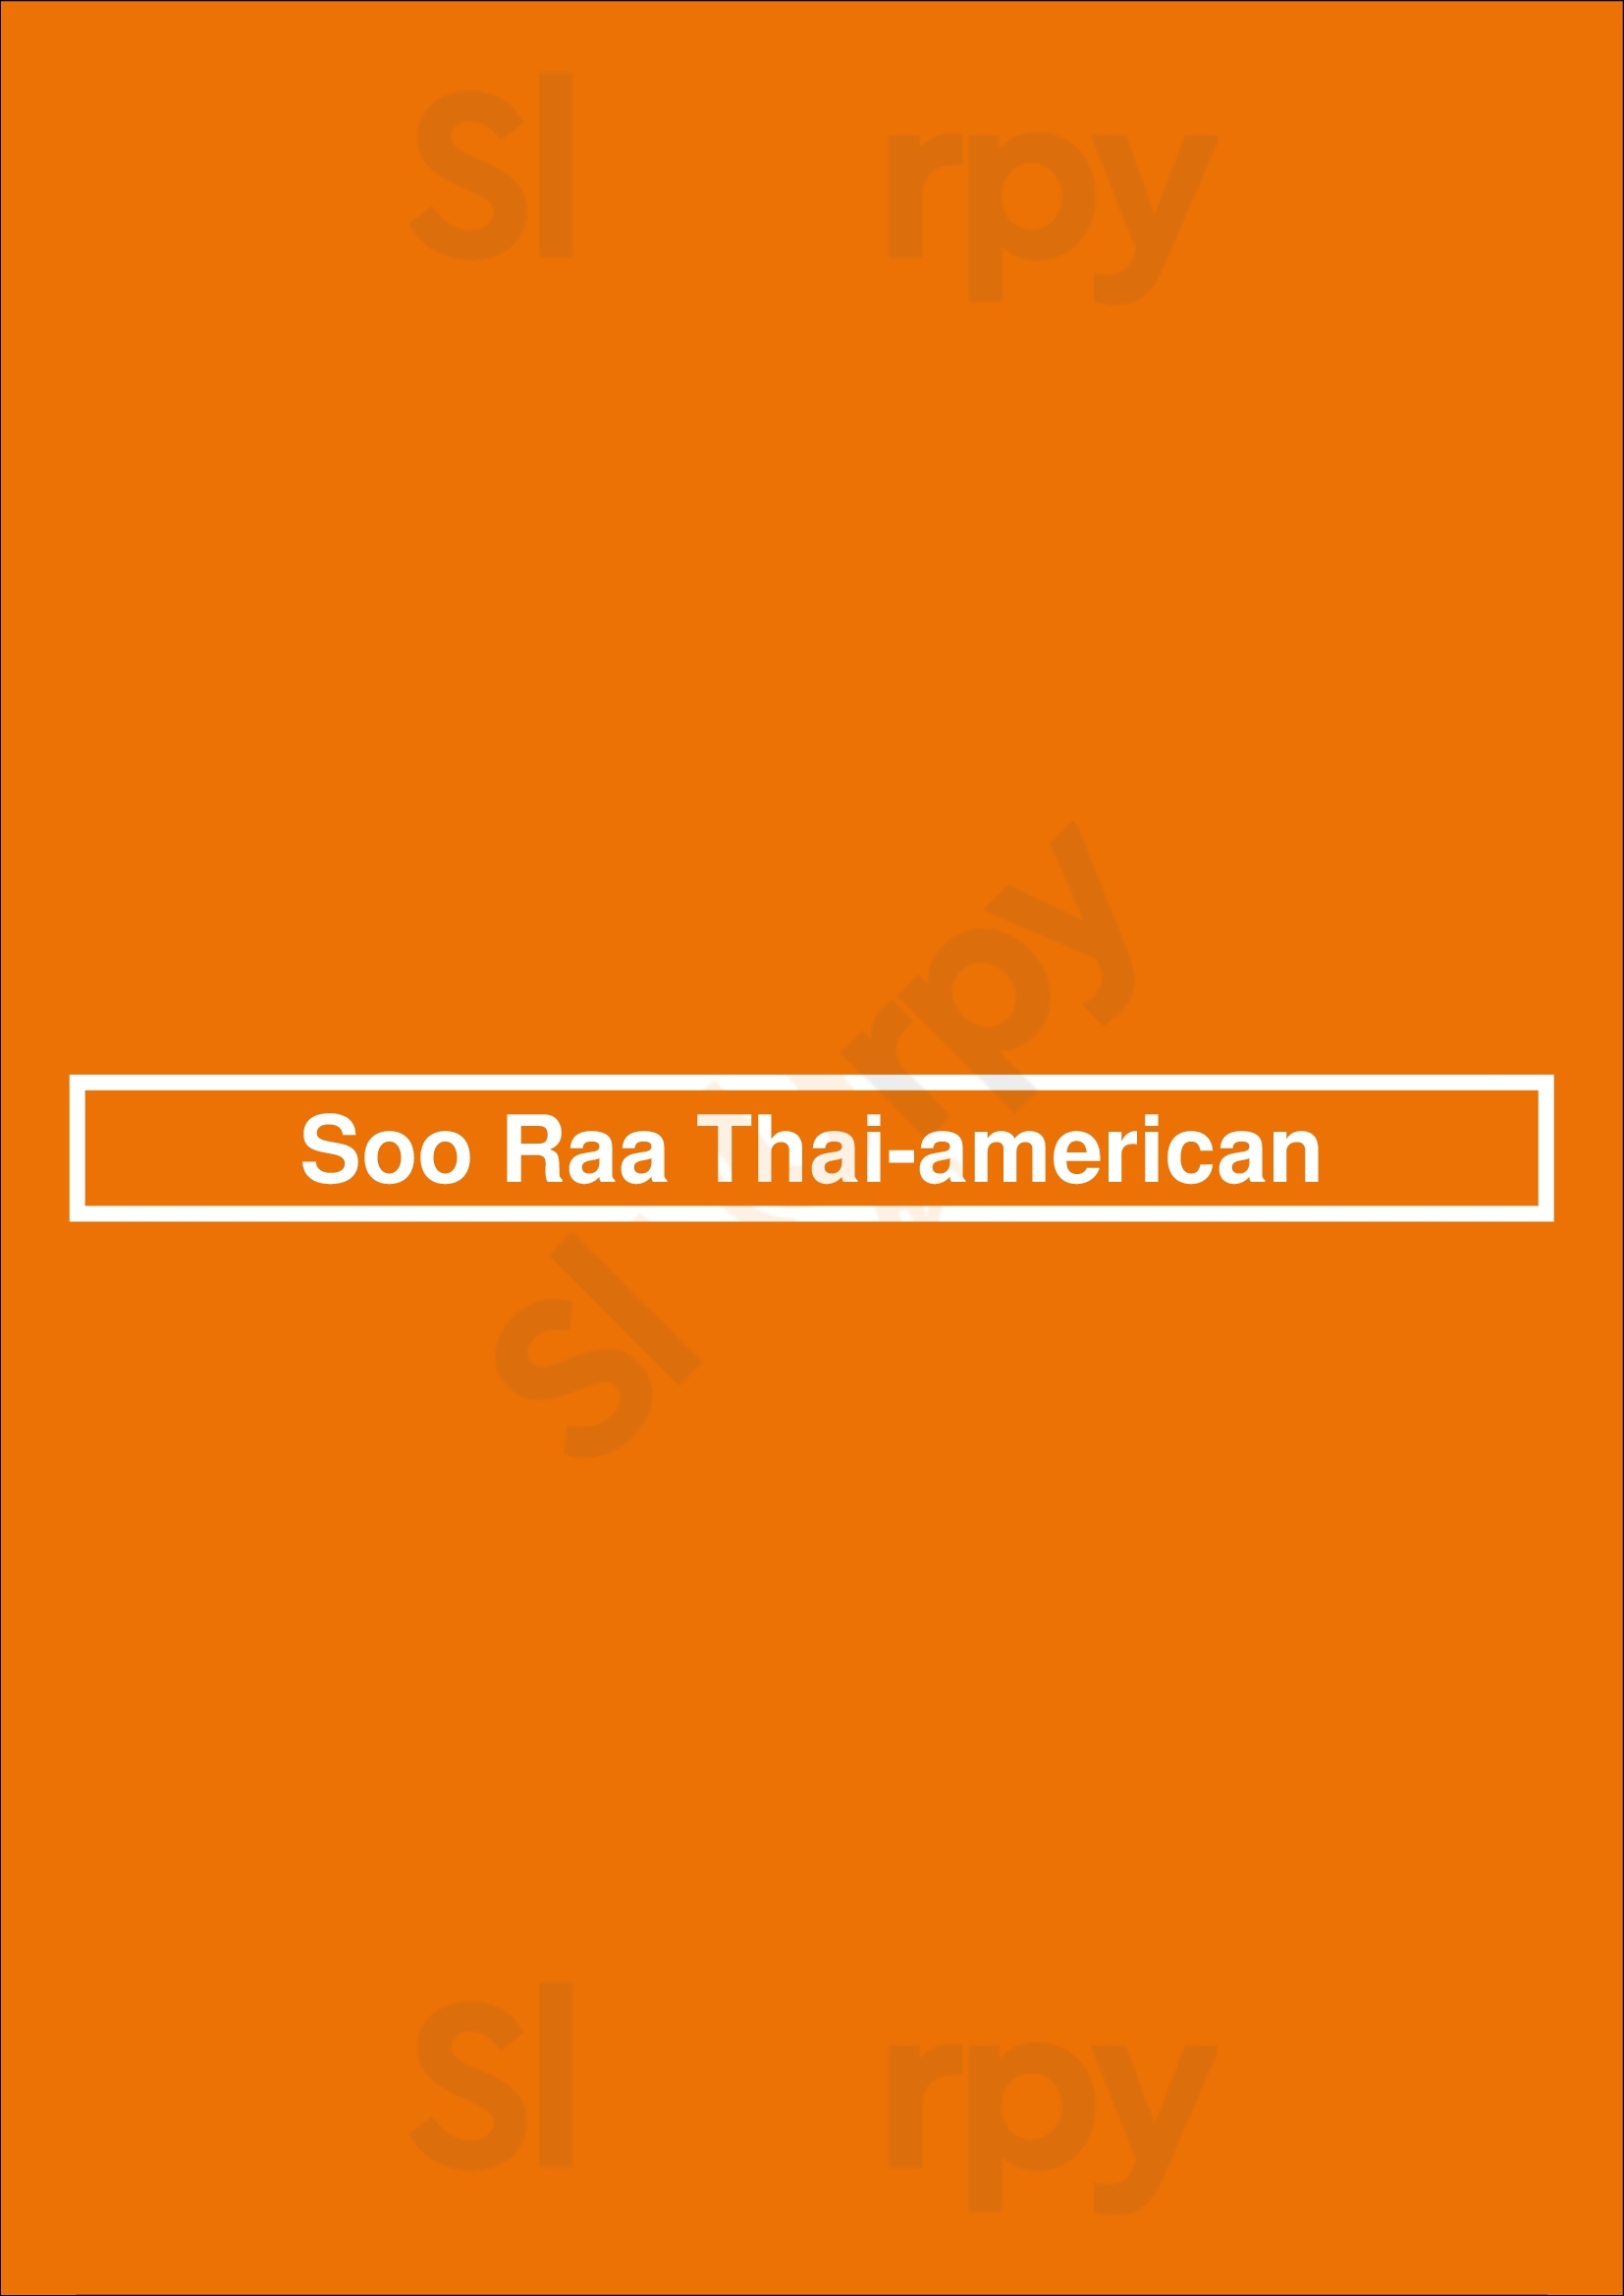 Soo Raa Thai-american Los Angeles Menu - 1